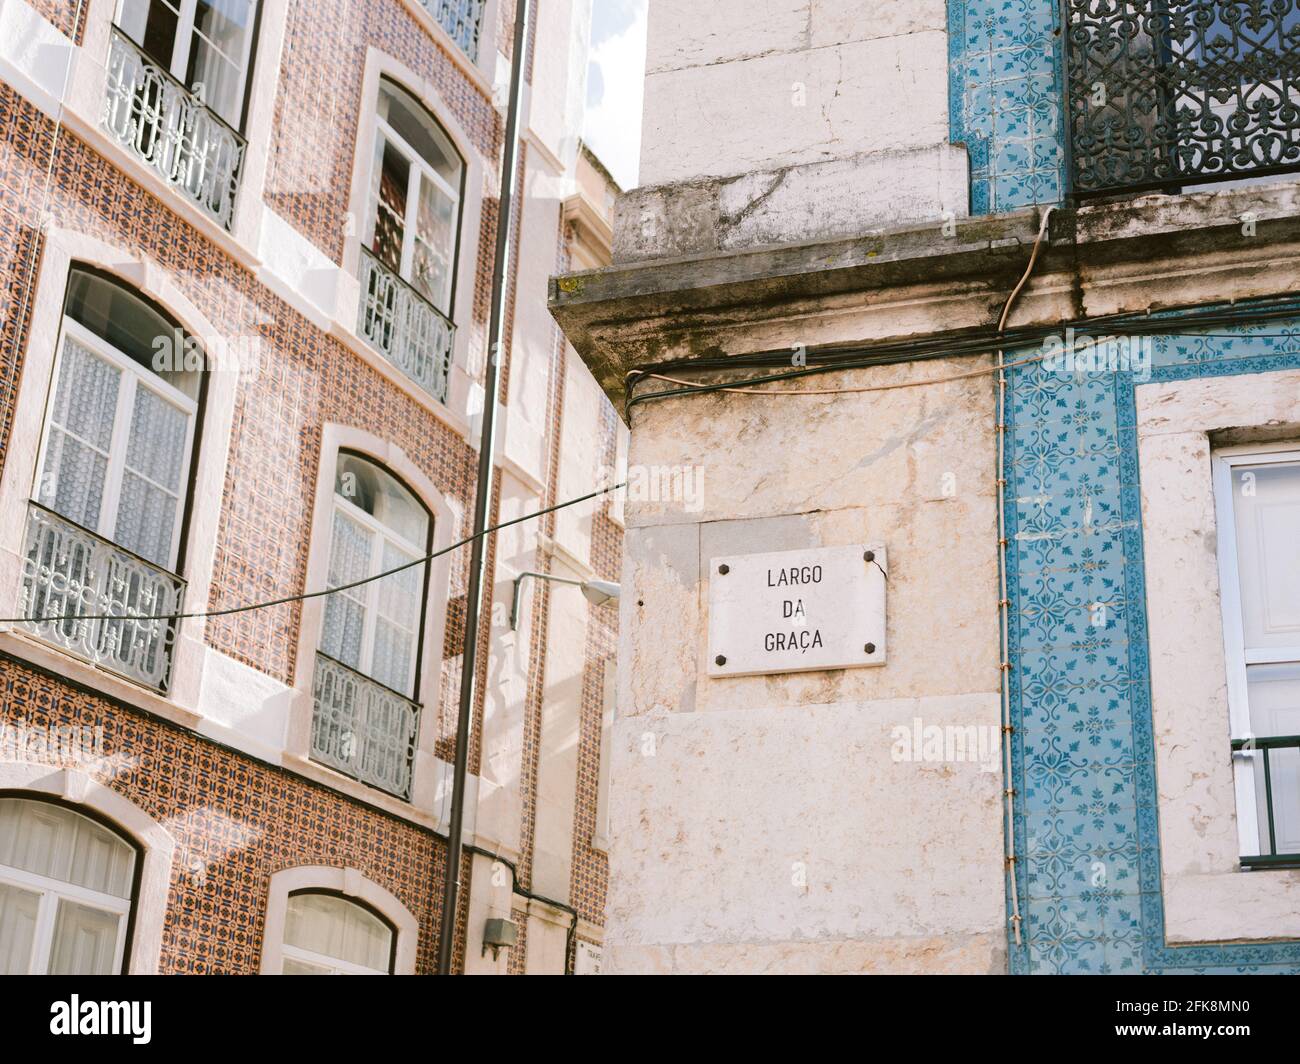 Graca neigbourhood - Fotografia di architettura di viaggio nella città di Lisbona Portogallo Europa Foto Stock